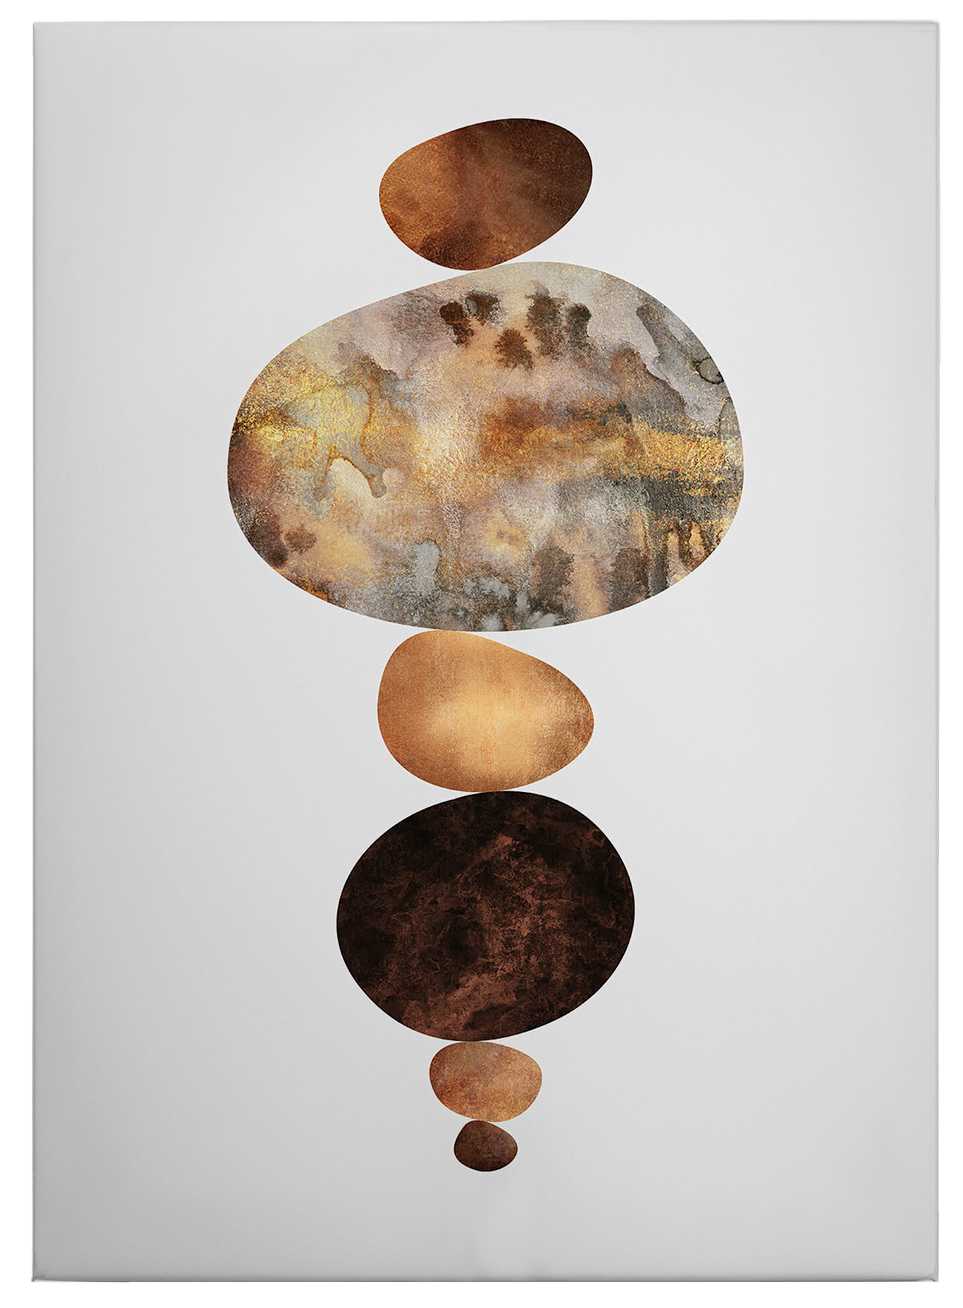             Canvas print "Balance" by Fredriksson – brown
        